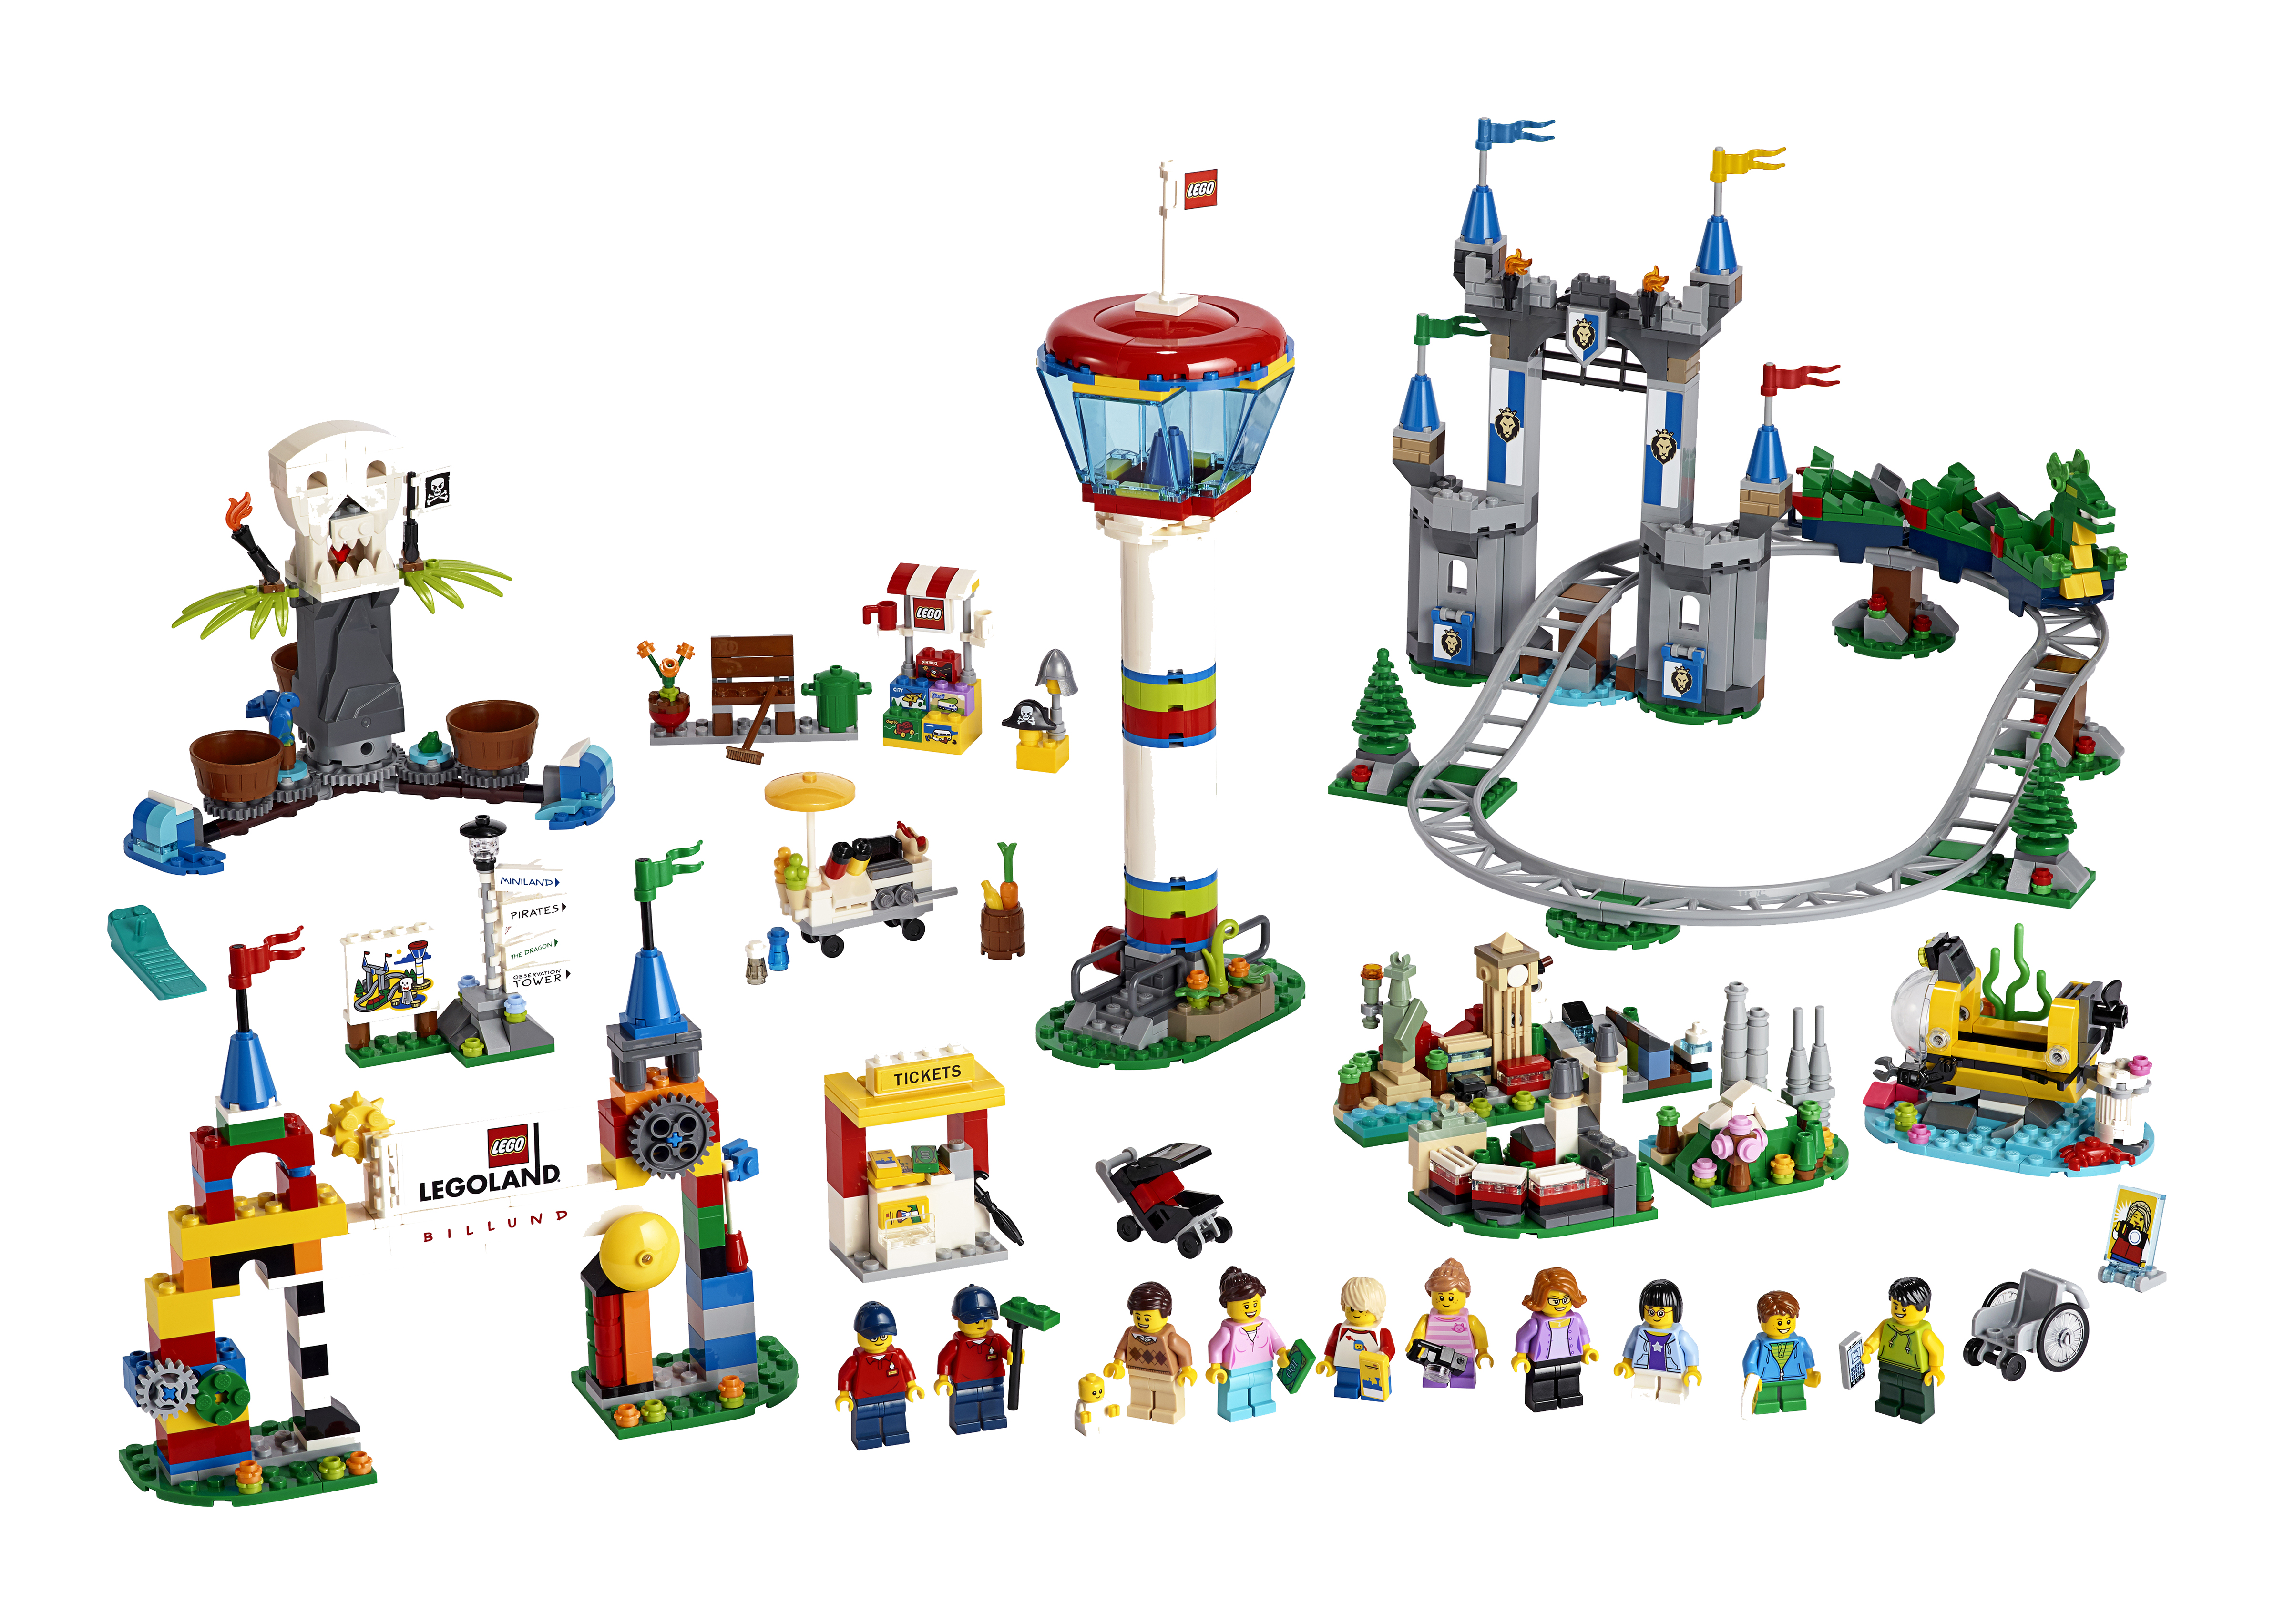 LEGOLAND LEGO set available from LEGOLAND Windsor Resort